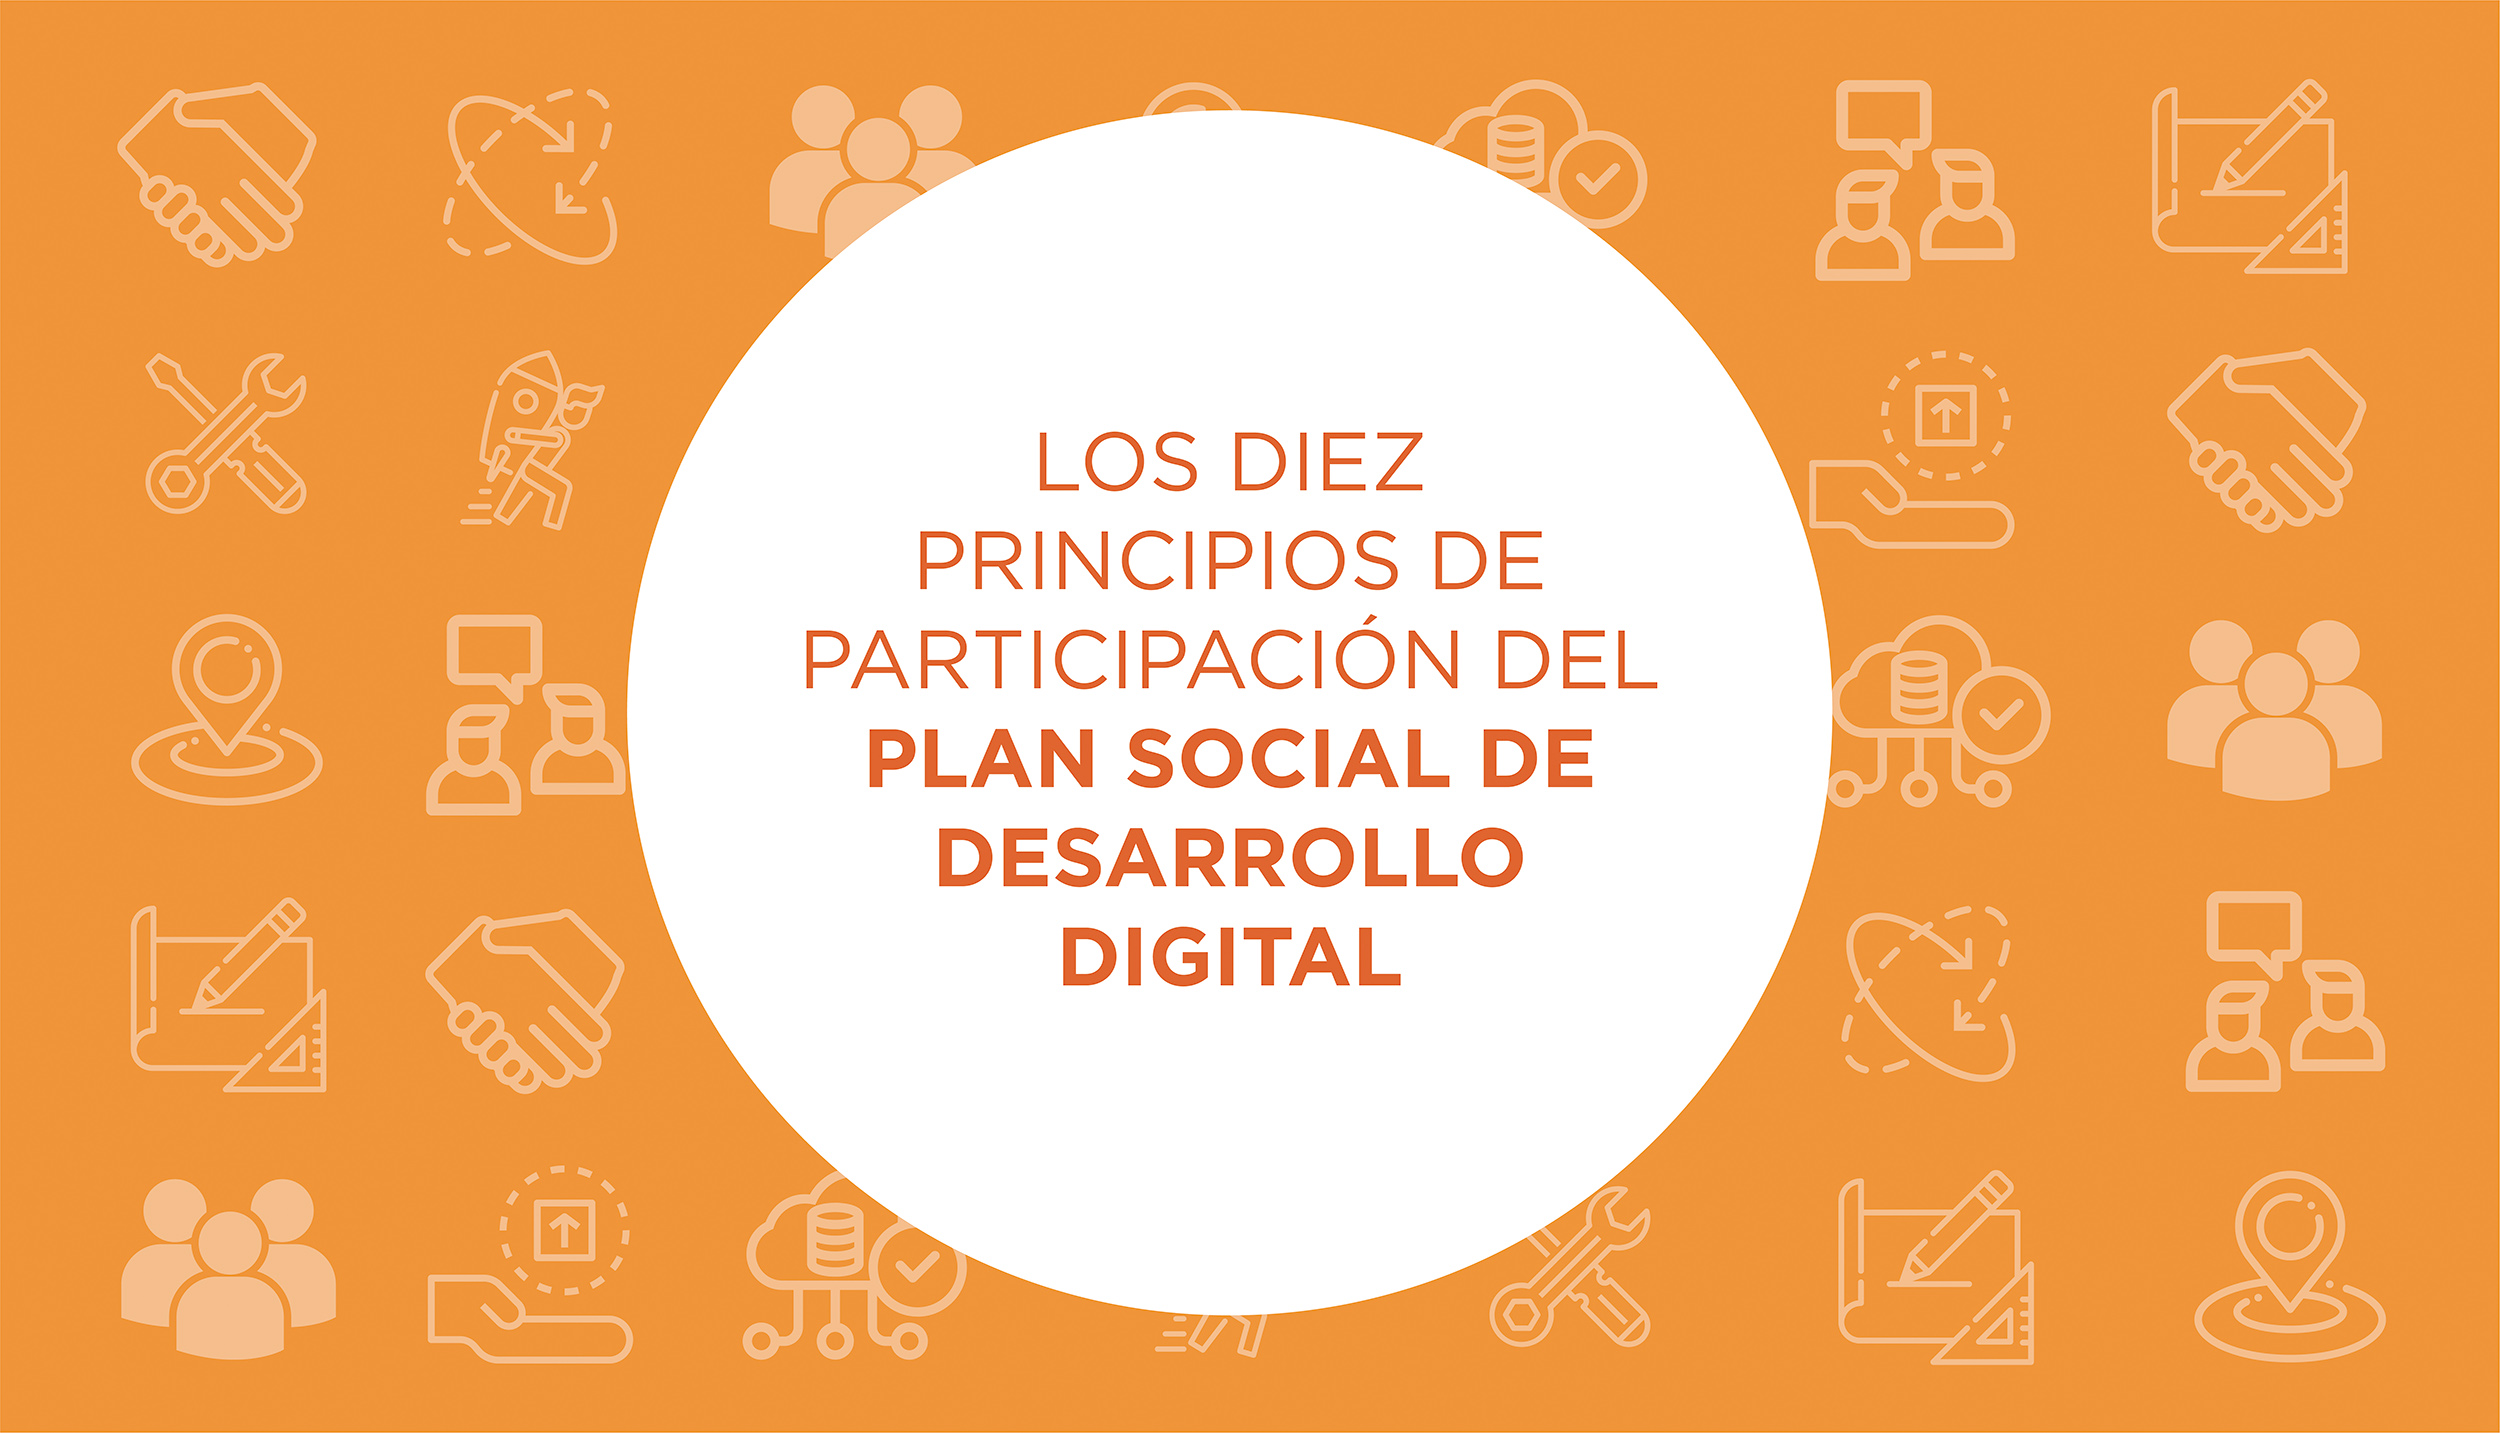 Los diez principios de participación del Plan Social de Desarrollo Digital